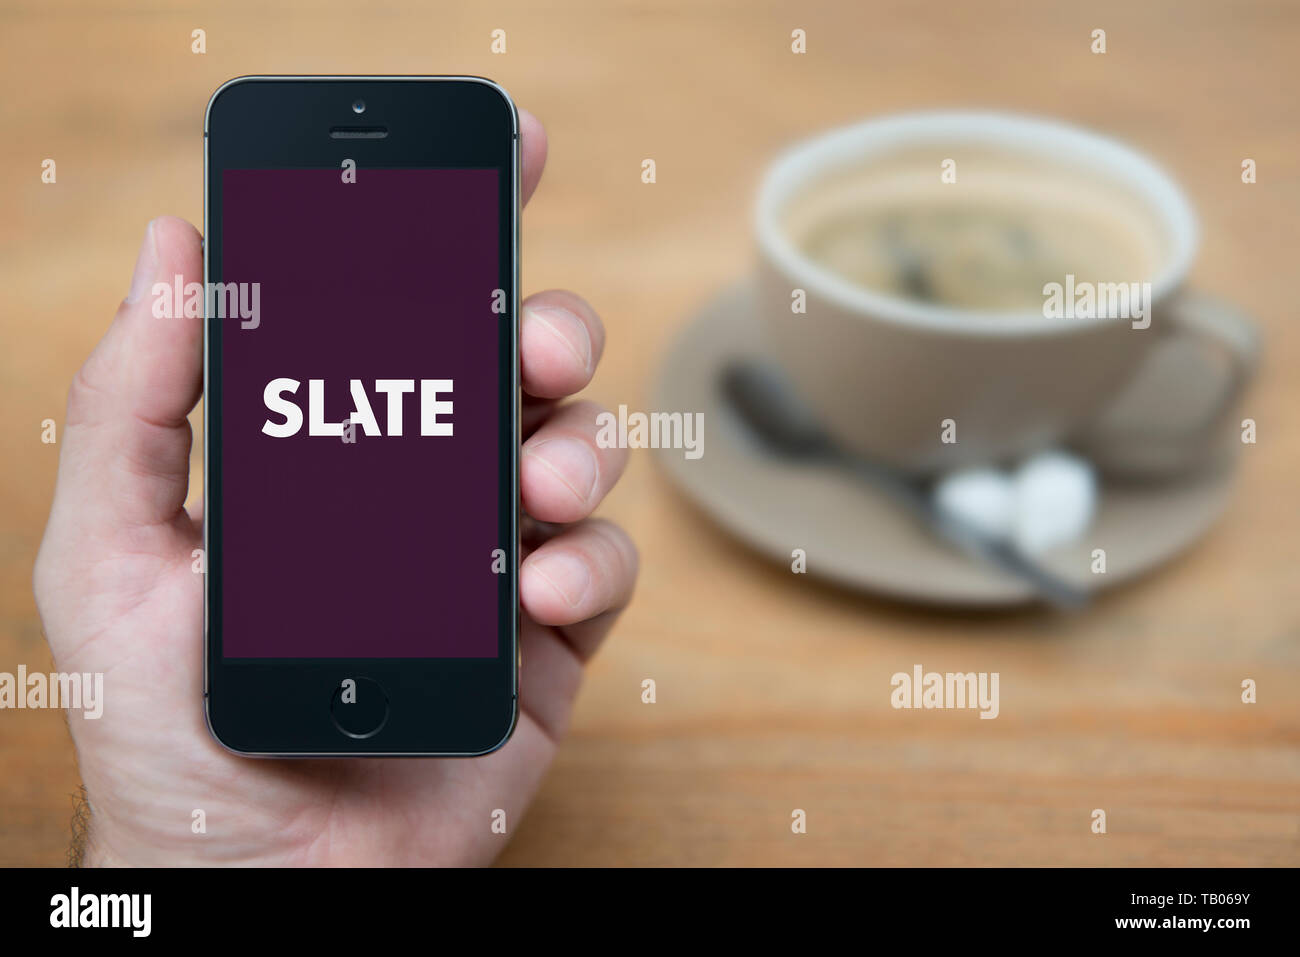 Un homme se penche sur son iPhone qui affiche le logo du magazine Slate (usage éditorial uniquement). Banque D'Images